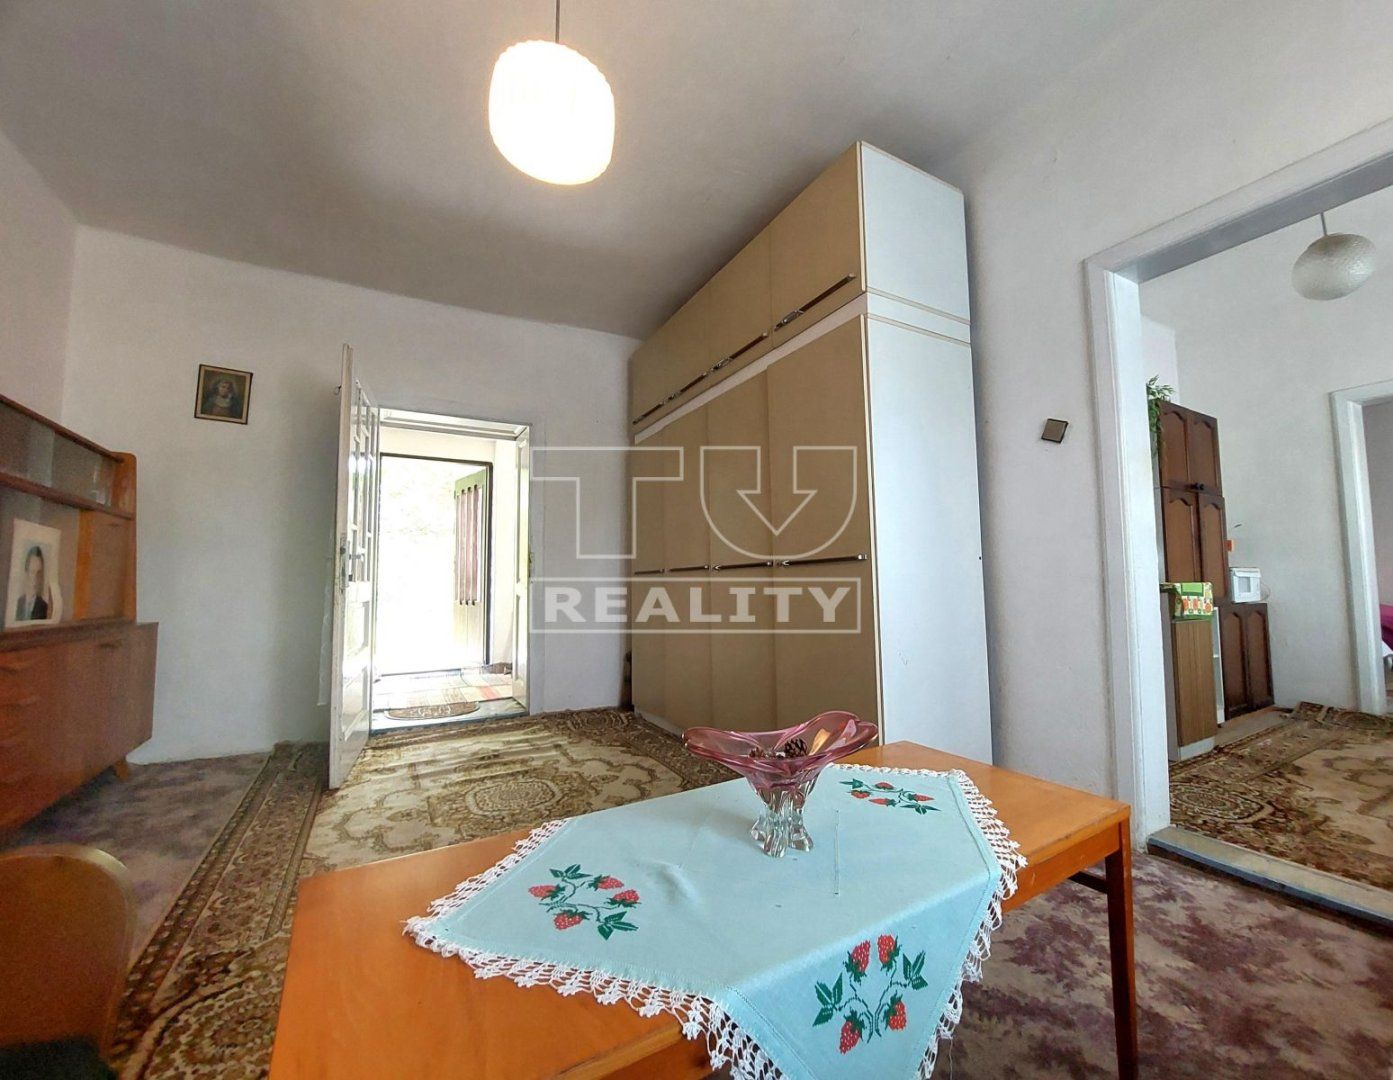 Nová cena!!!Na predaj starší rodinný dom v Nitrianskej Blatnici, postavený na krásnom slnečnom pozemku 2000 m2